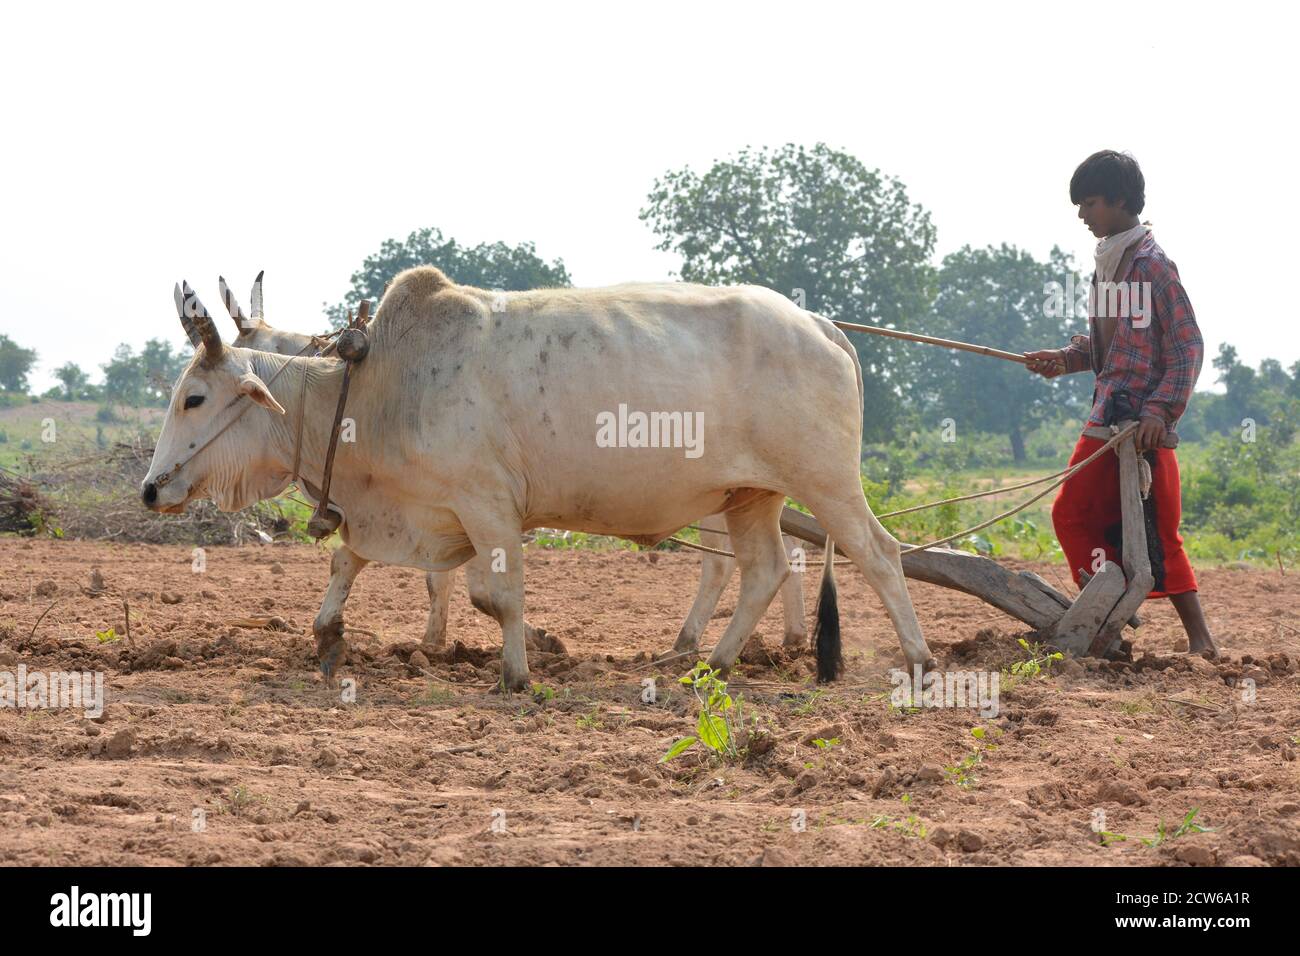 TIKAMGARH, MADHYA PRADESH, INDIA - 21 SETTEMBRE 2020: Contadino indiano non identificato che lavora con bull nella sua fattoria, una scena agricola indiana. Foto Stock